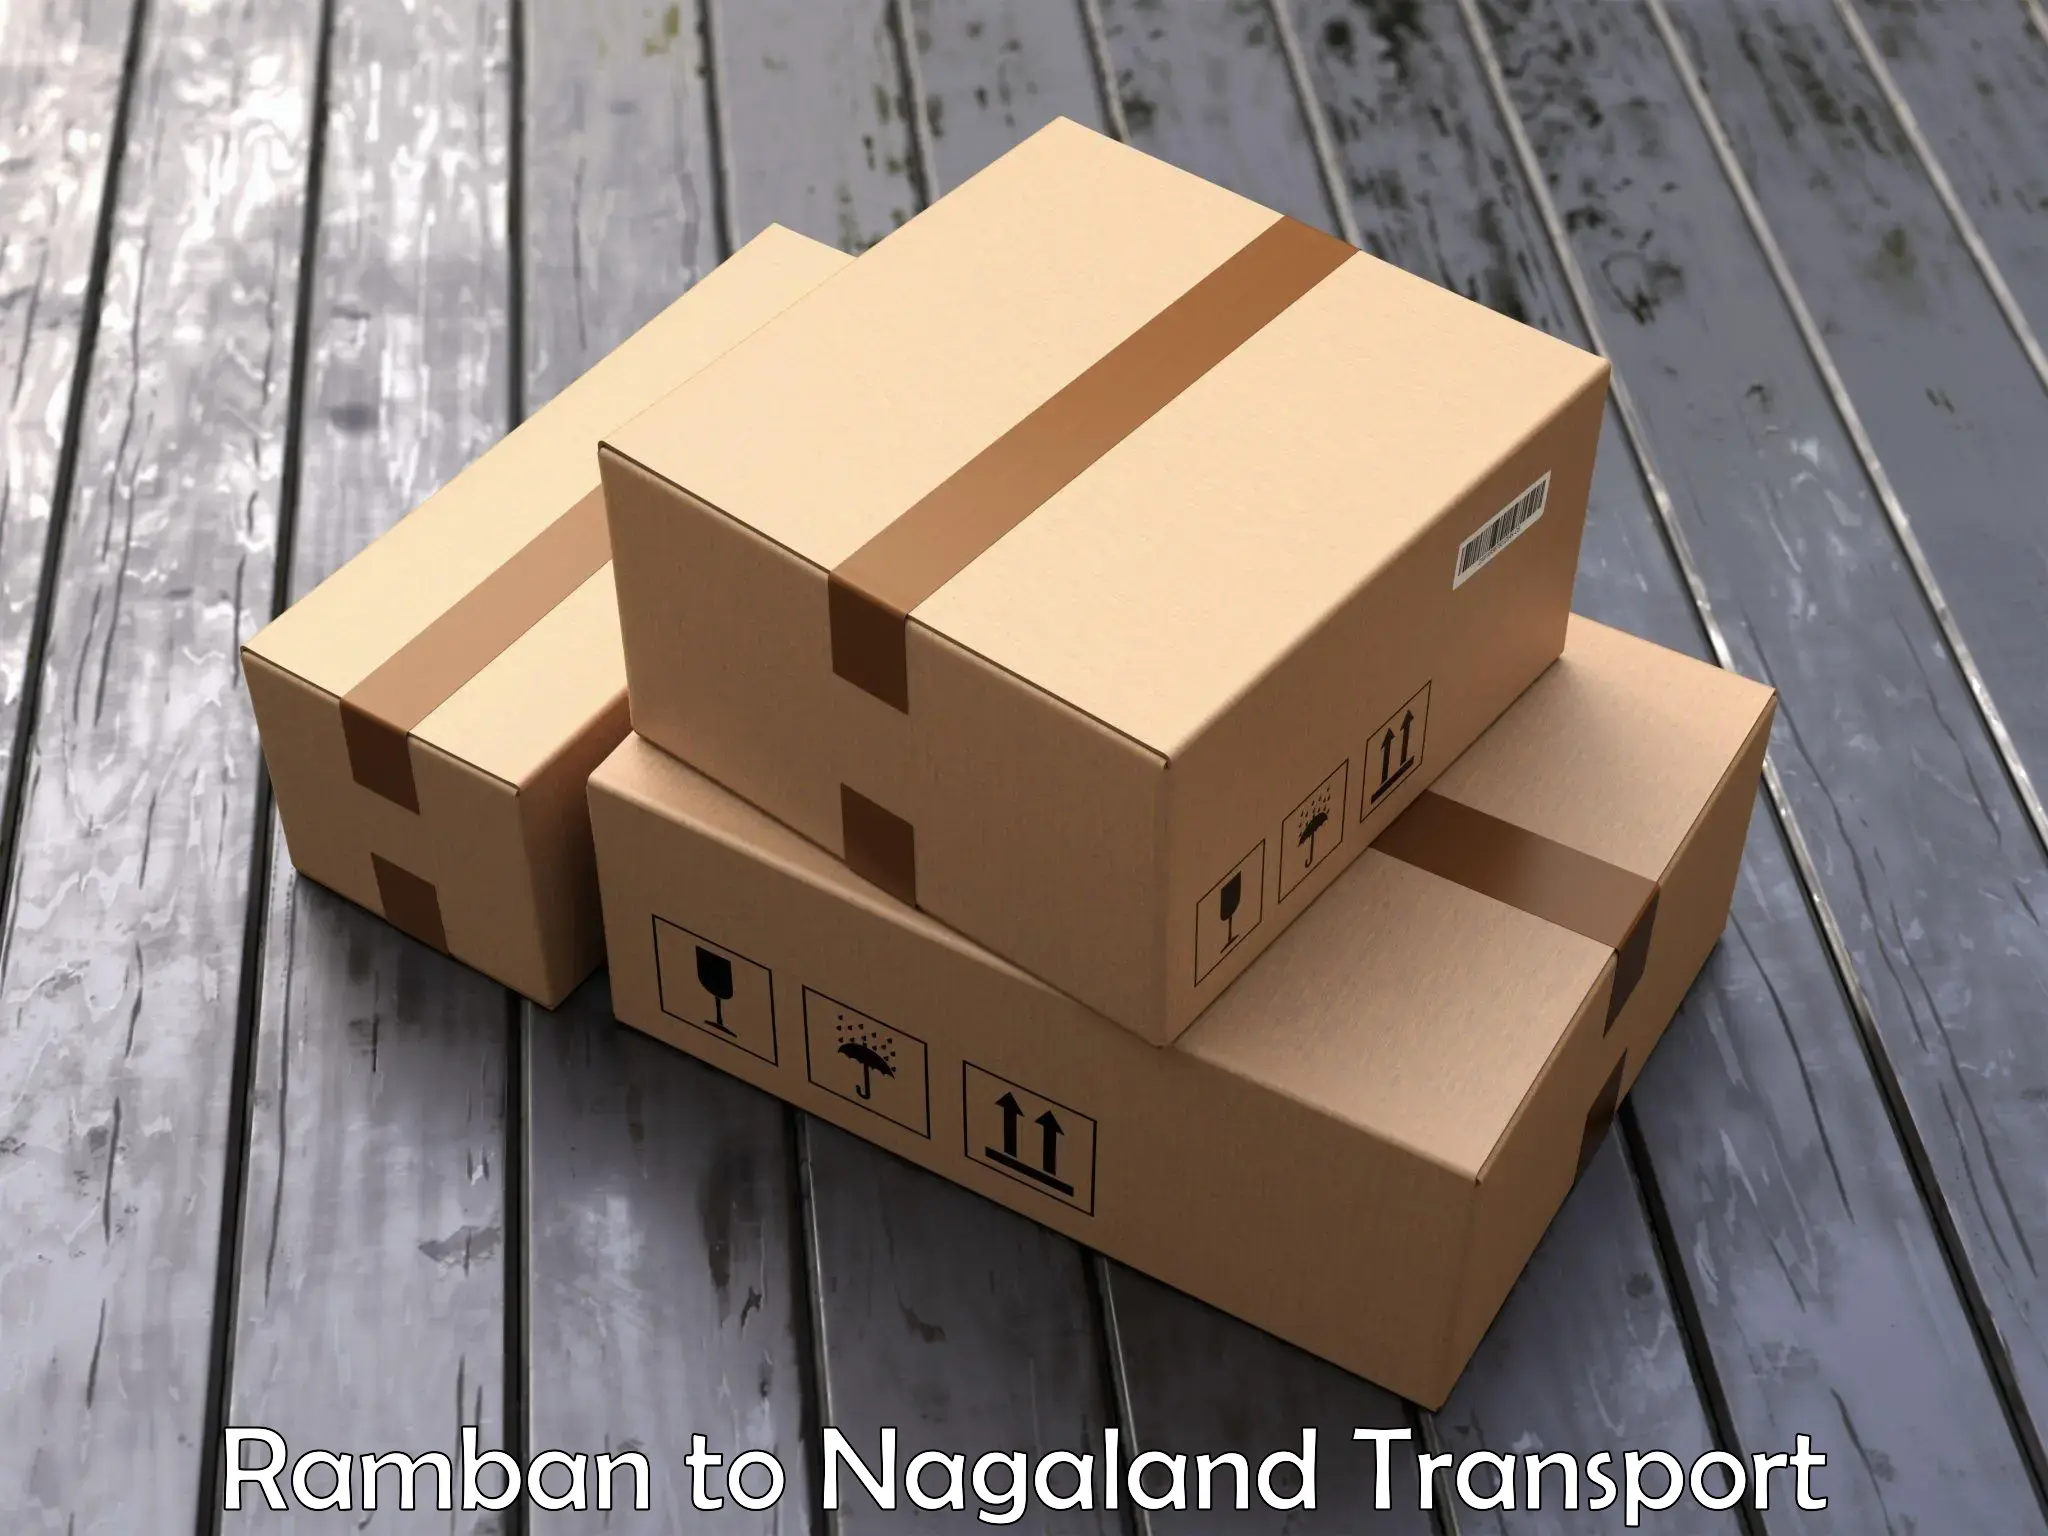 Express transport services Ramban to Nagaland